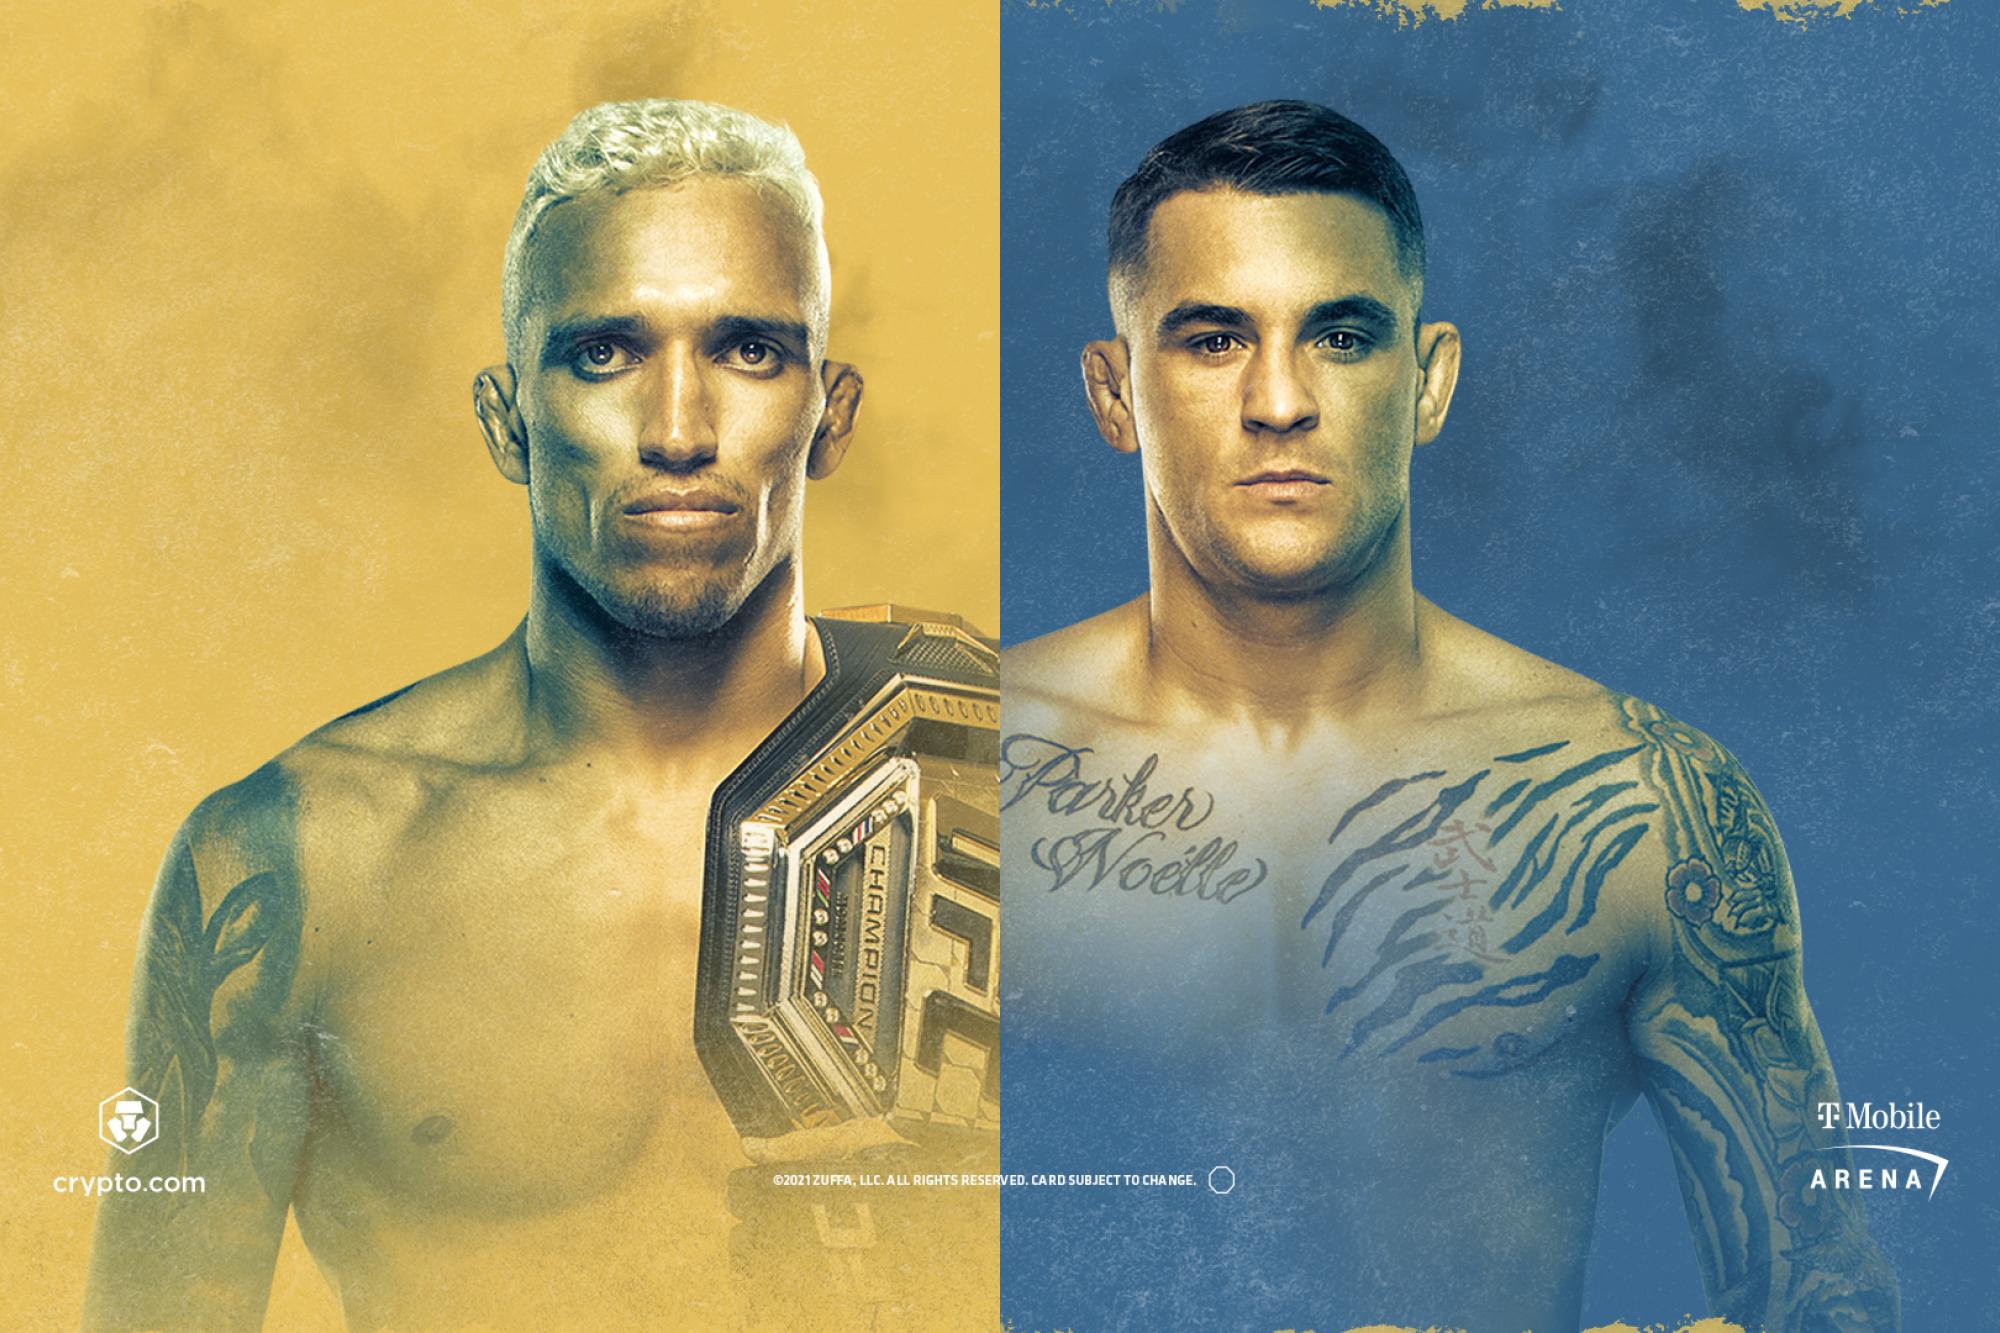 UFC 269 - Las Vegas - Poster et affiche